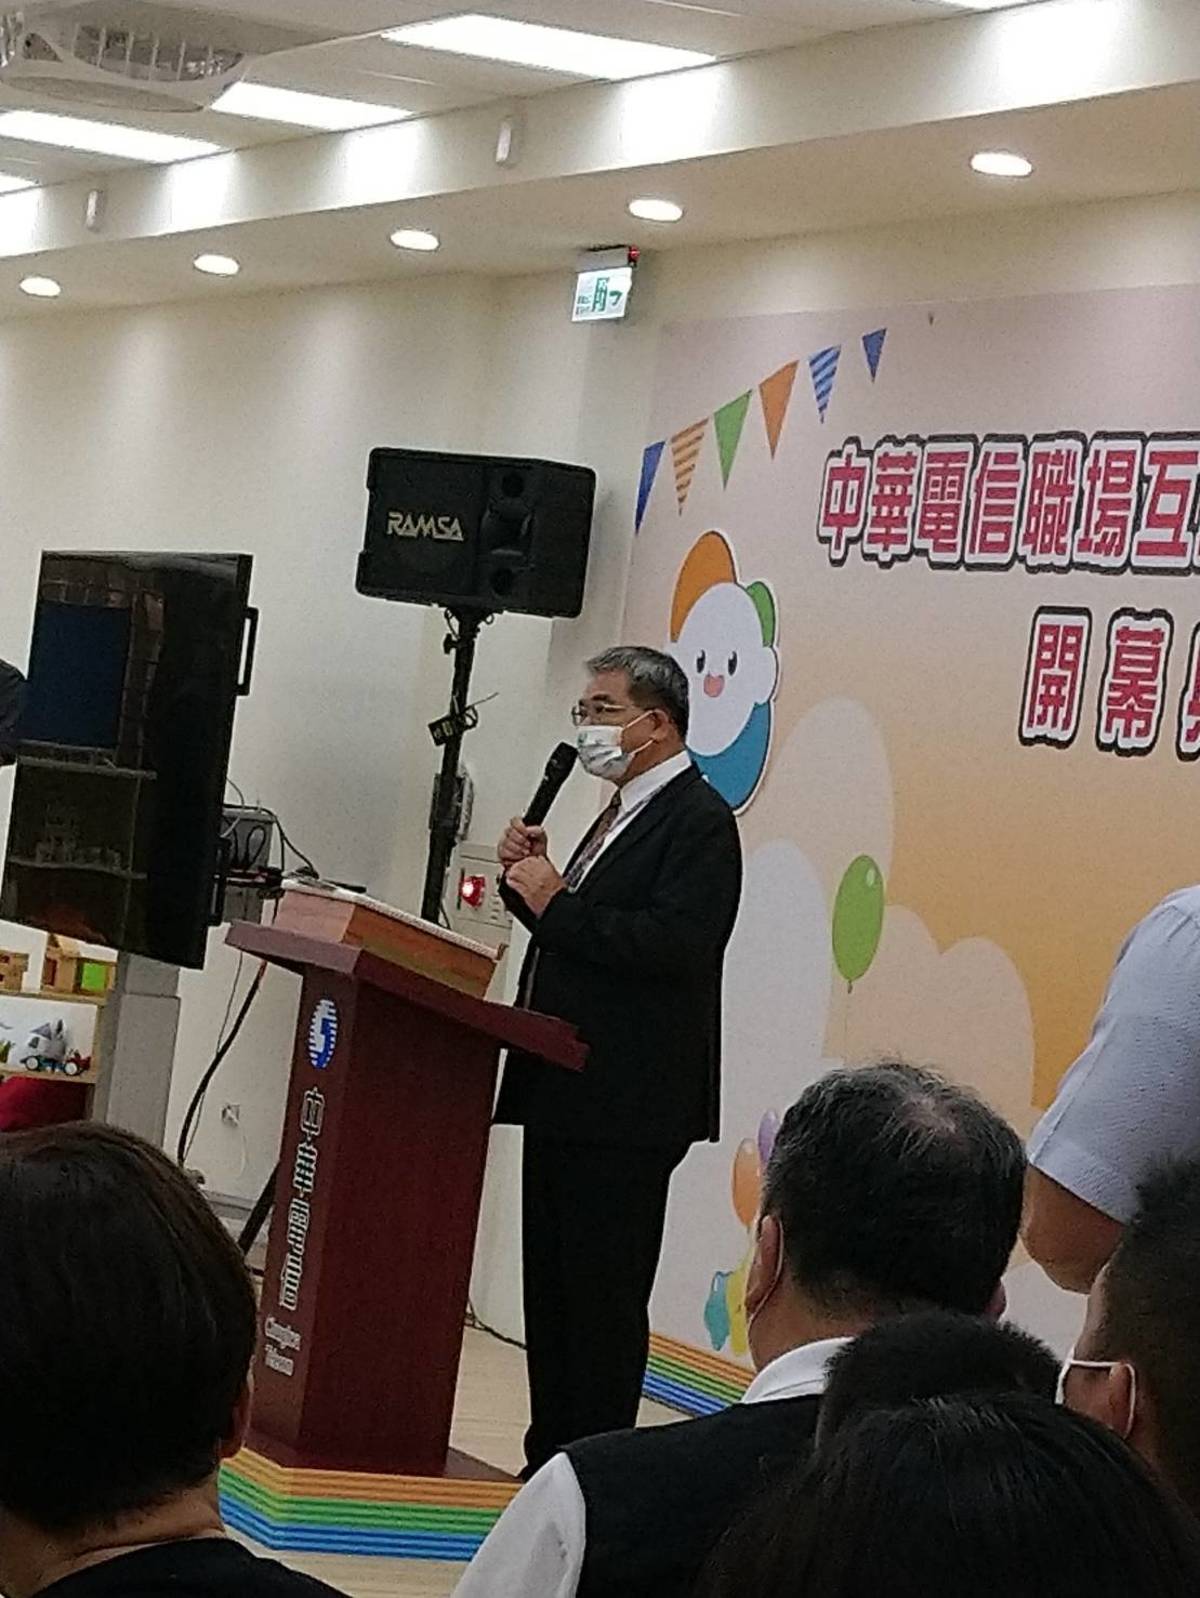 教育部次長蔡清華出席中華電信「職場互助教保服務中心」開幕